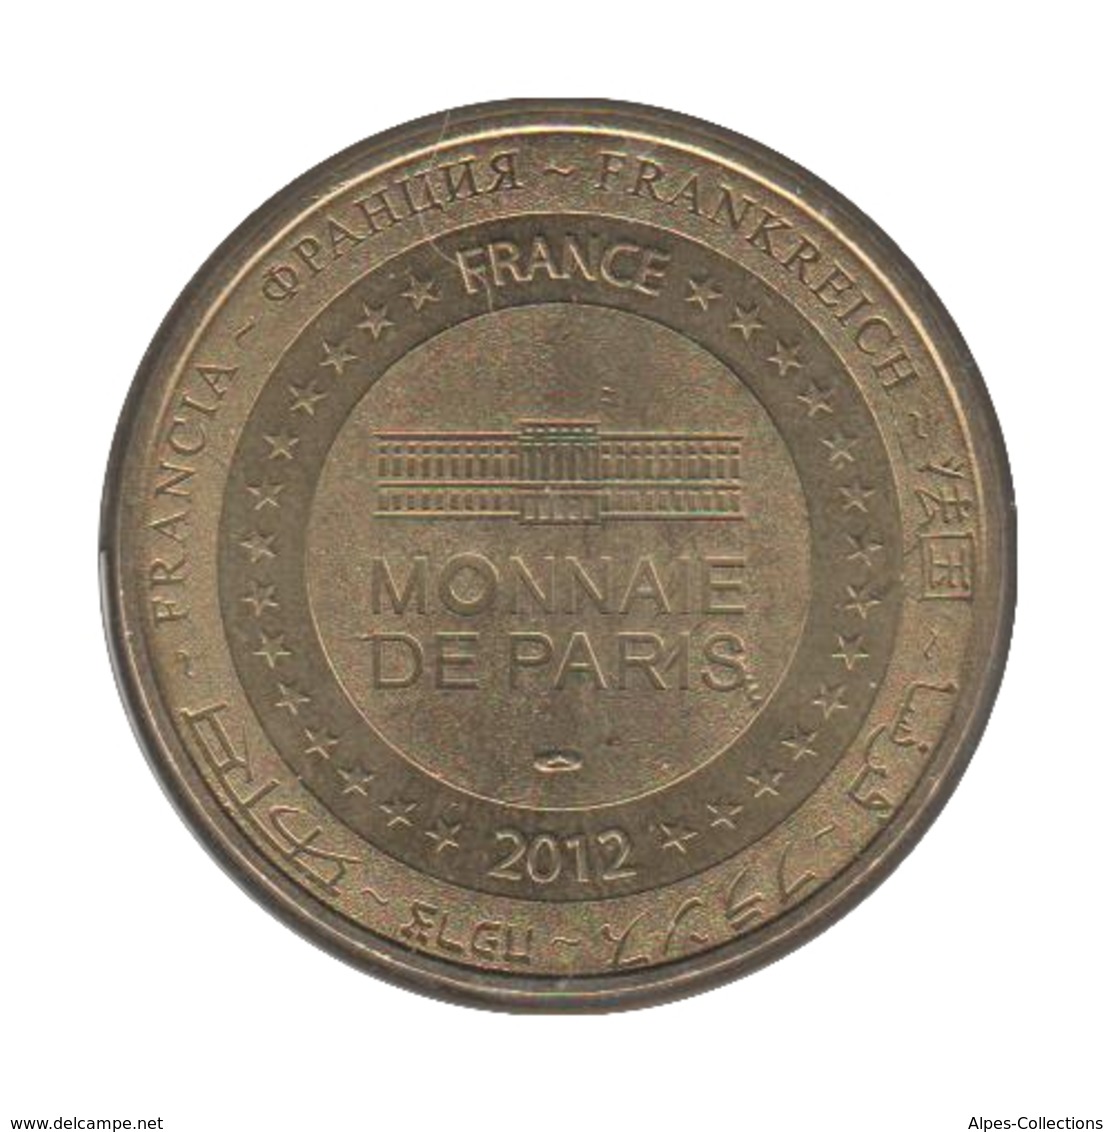 0265 - MEDAILLE TOURISTIQUE MONNAIE DE PARIS 77 - Dyneyland - 2012 - 2012